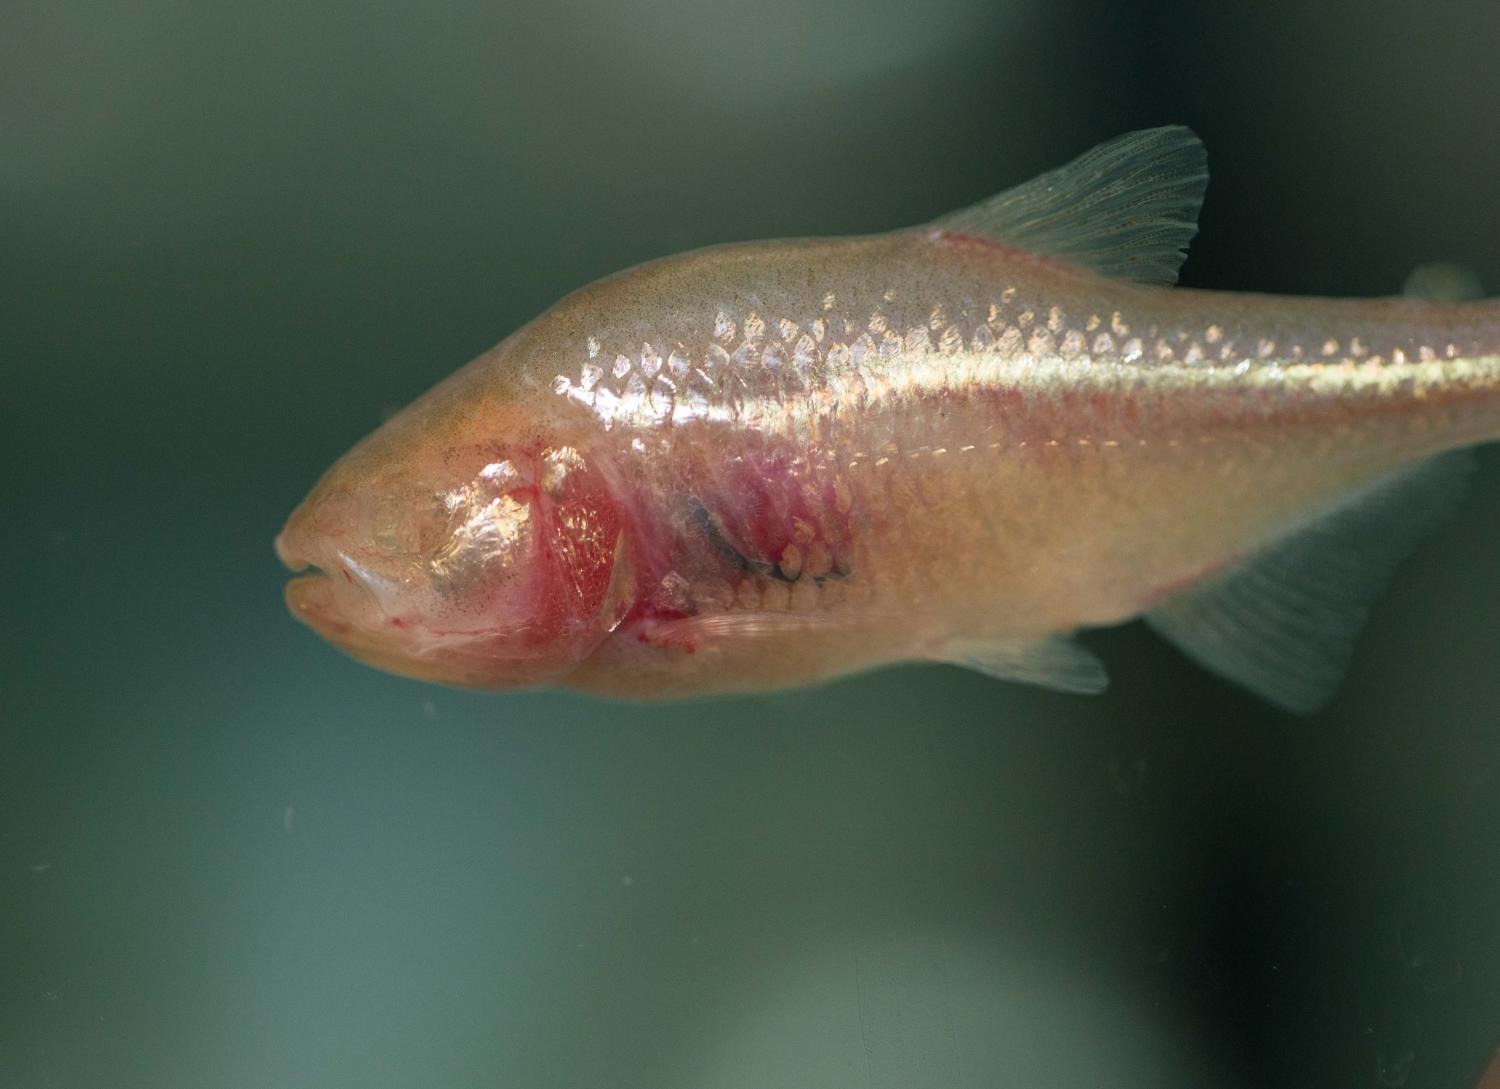 Meksička slijepa špiljska riba ima ljudske na mjestu gdje bi joj trebale biti oči (©Andrew Higley/UC Creative Services).